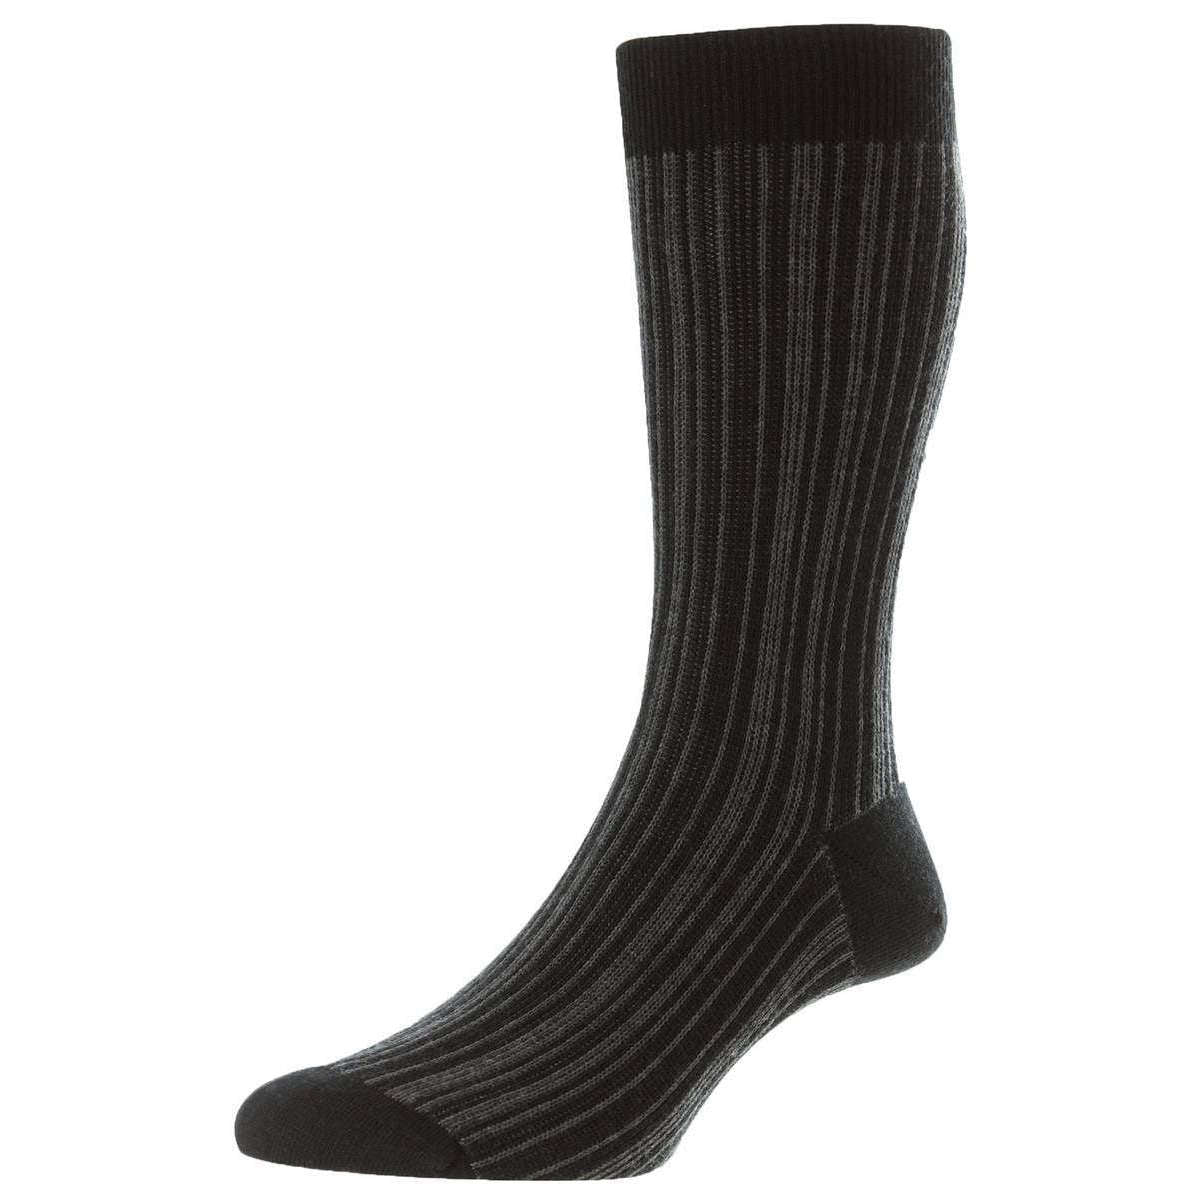 Pantherella Marsden Merino Wool Socks - Black